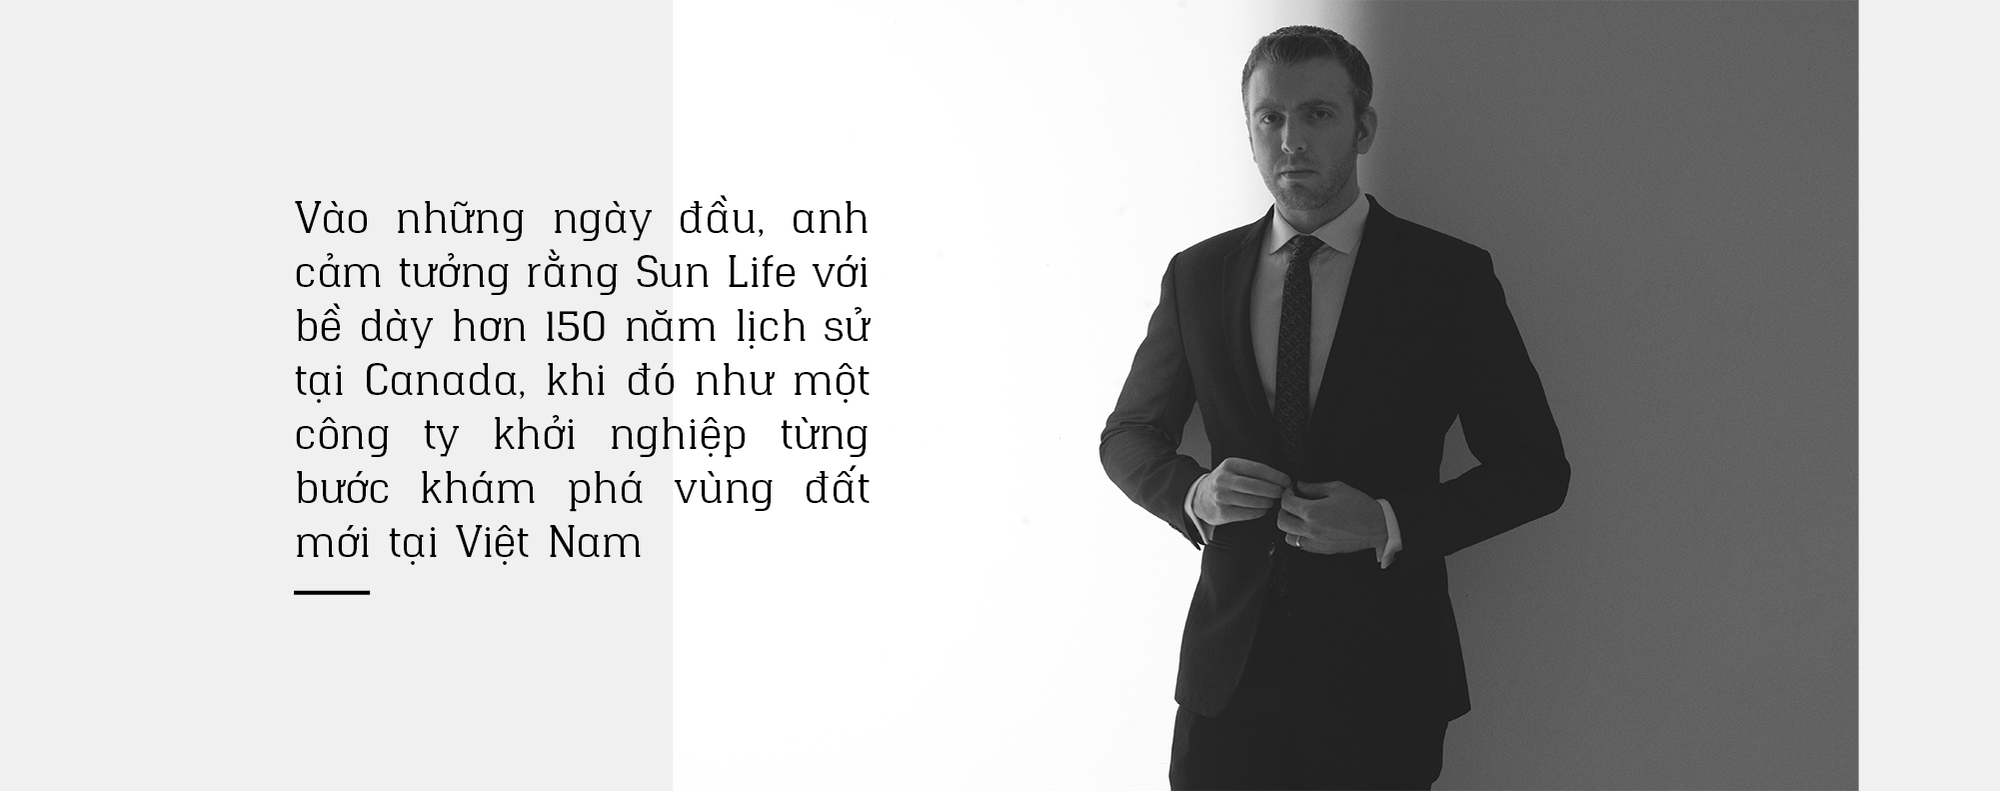 Matthew Mohr, Phó tổng Giám đốc Tài chính Sun Life Việt Nam:THÀNH QUẢ TỪ NHỮNG NƯỚC ĐI MẠO HIỂM - Ảnh 5.